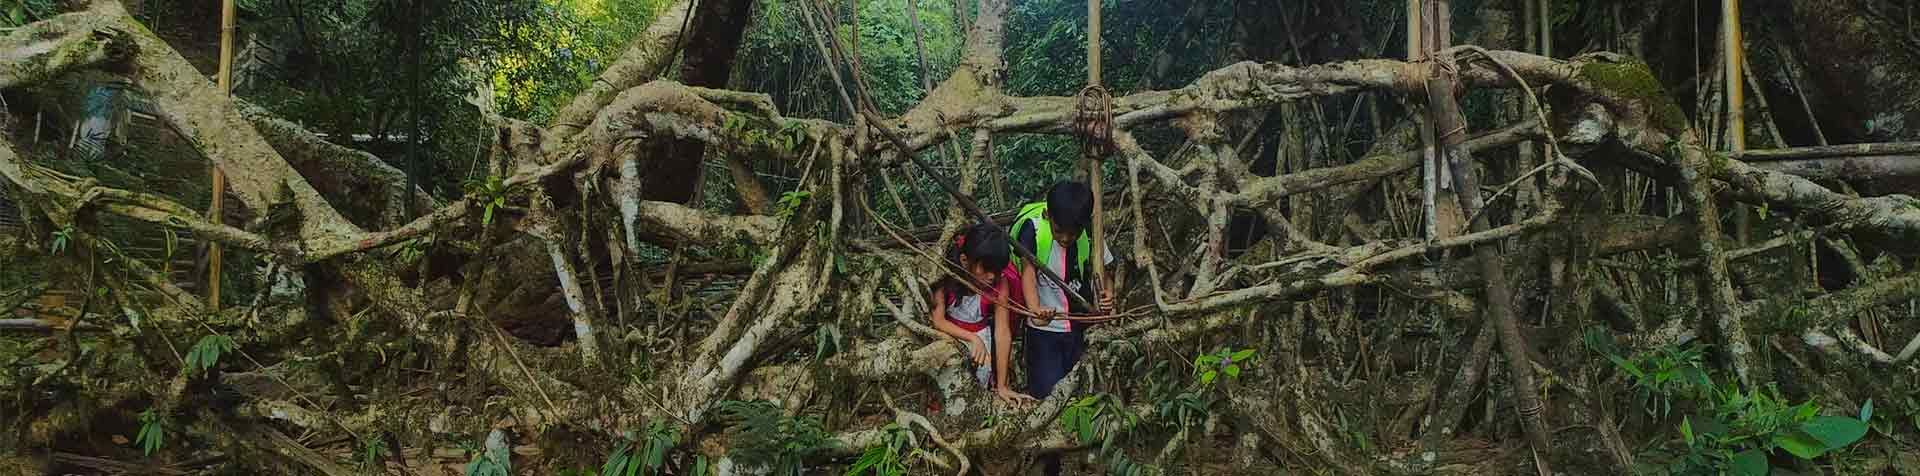 두 명의 어린이가 나뭇가지를 살펴보며 열대 우림 속을 걷고 있습니다.